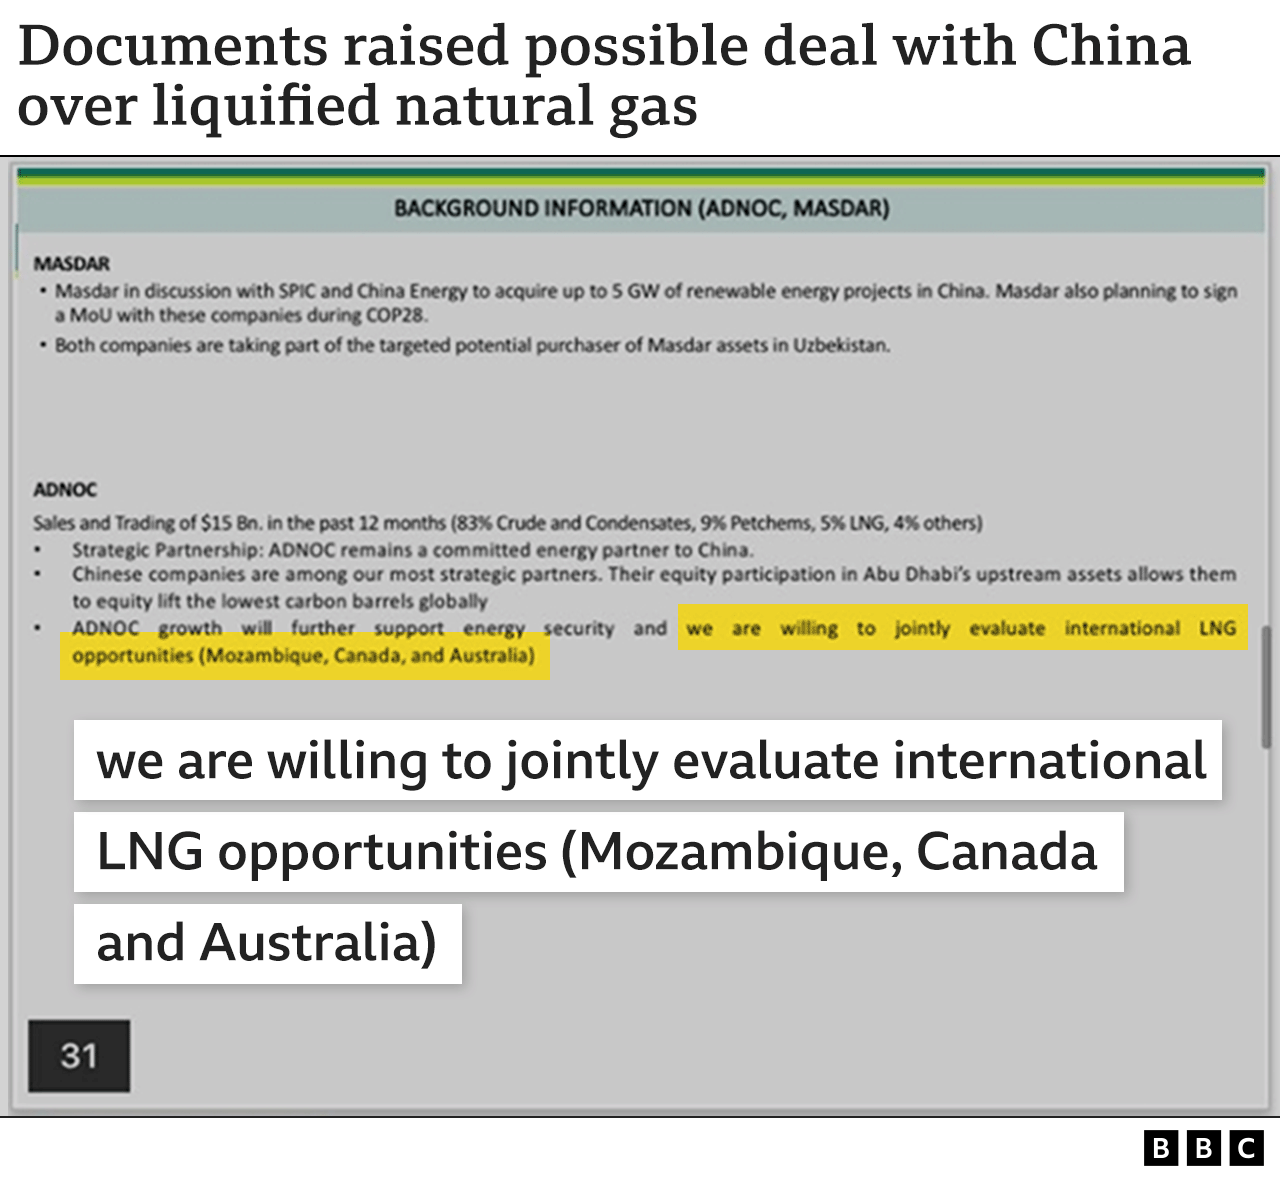 Gráfico que muestra citas del documento informativo para la reunión del equipo COP28 de los EAU con China, diciendo que estaban "dispuestos a evaluar conjuntamente las oportunidades internacionales de GNL (Mozambique, Canadá, Australia)"